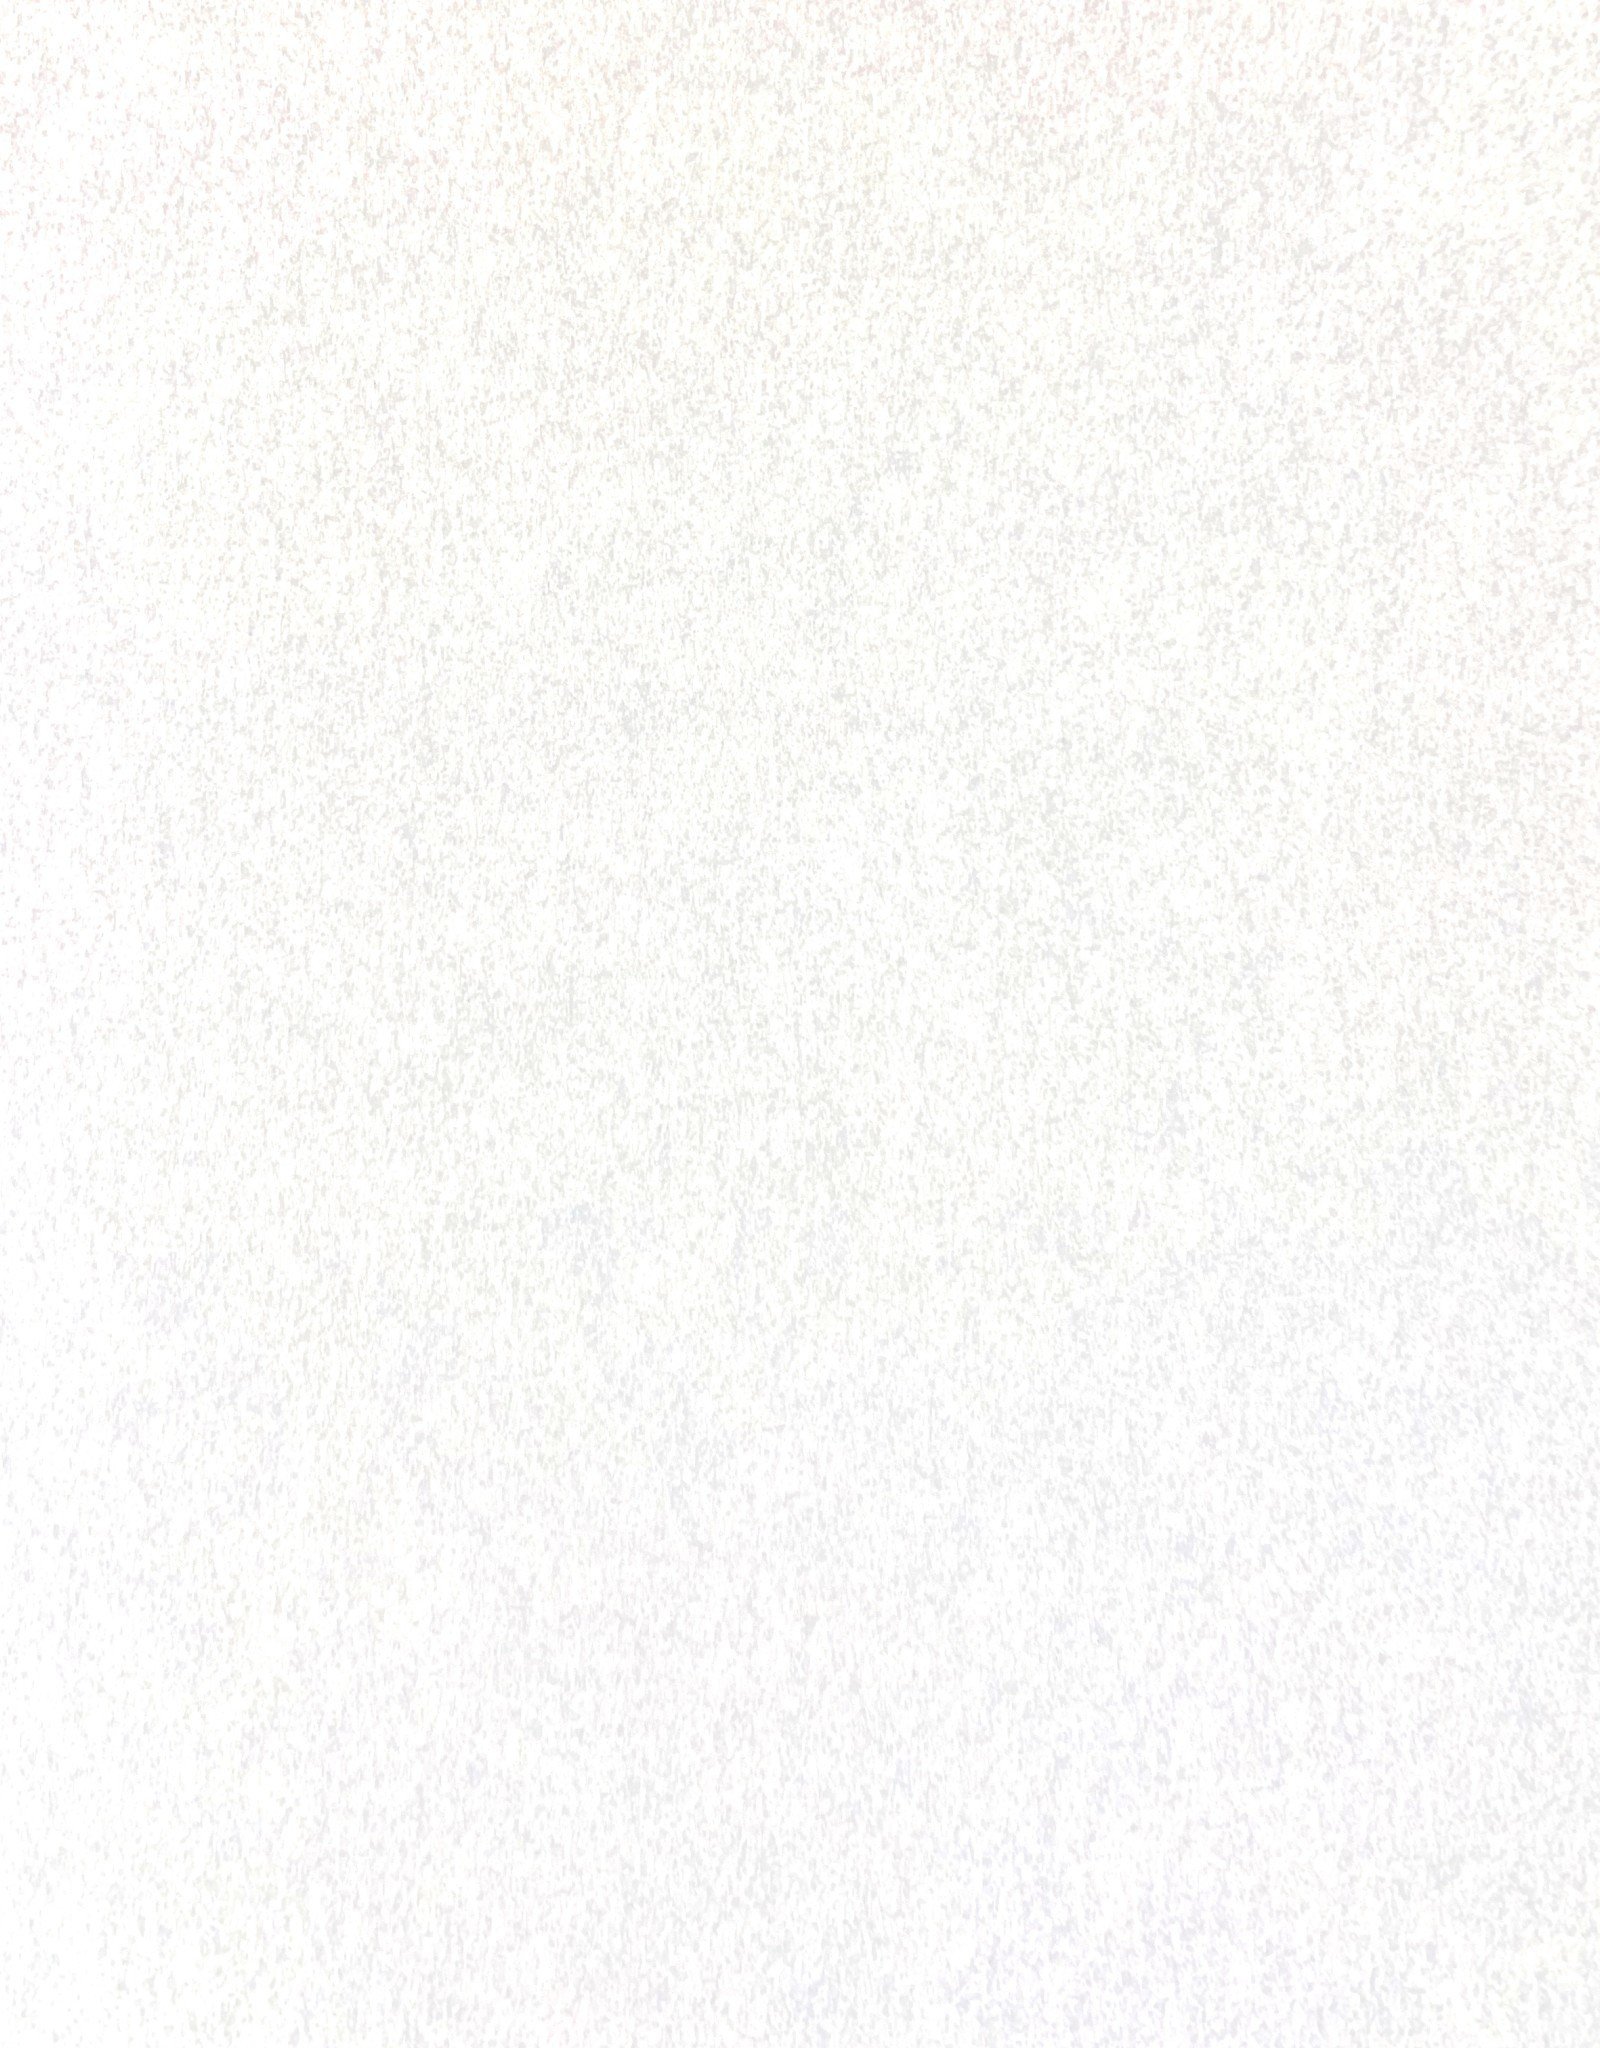 Pergamenata Parchment, White, 27" x 39", 230gsm